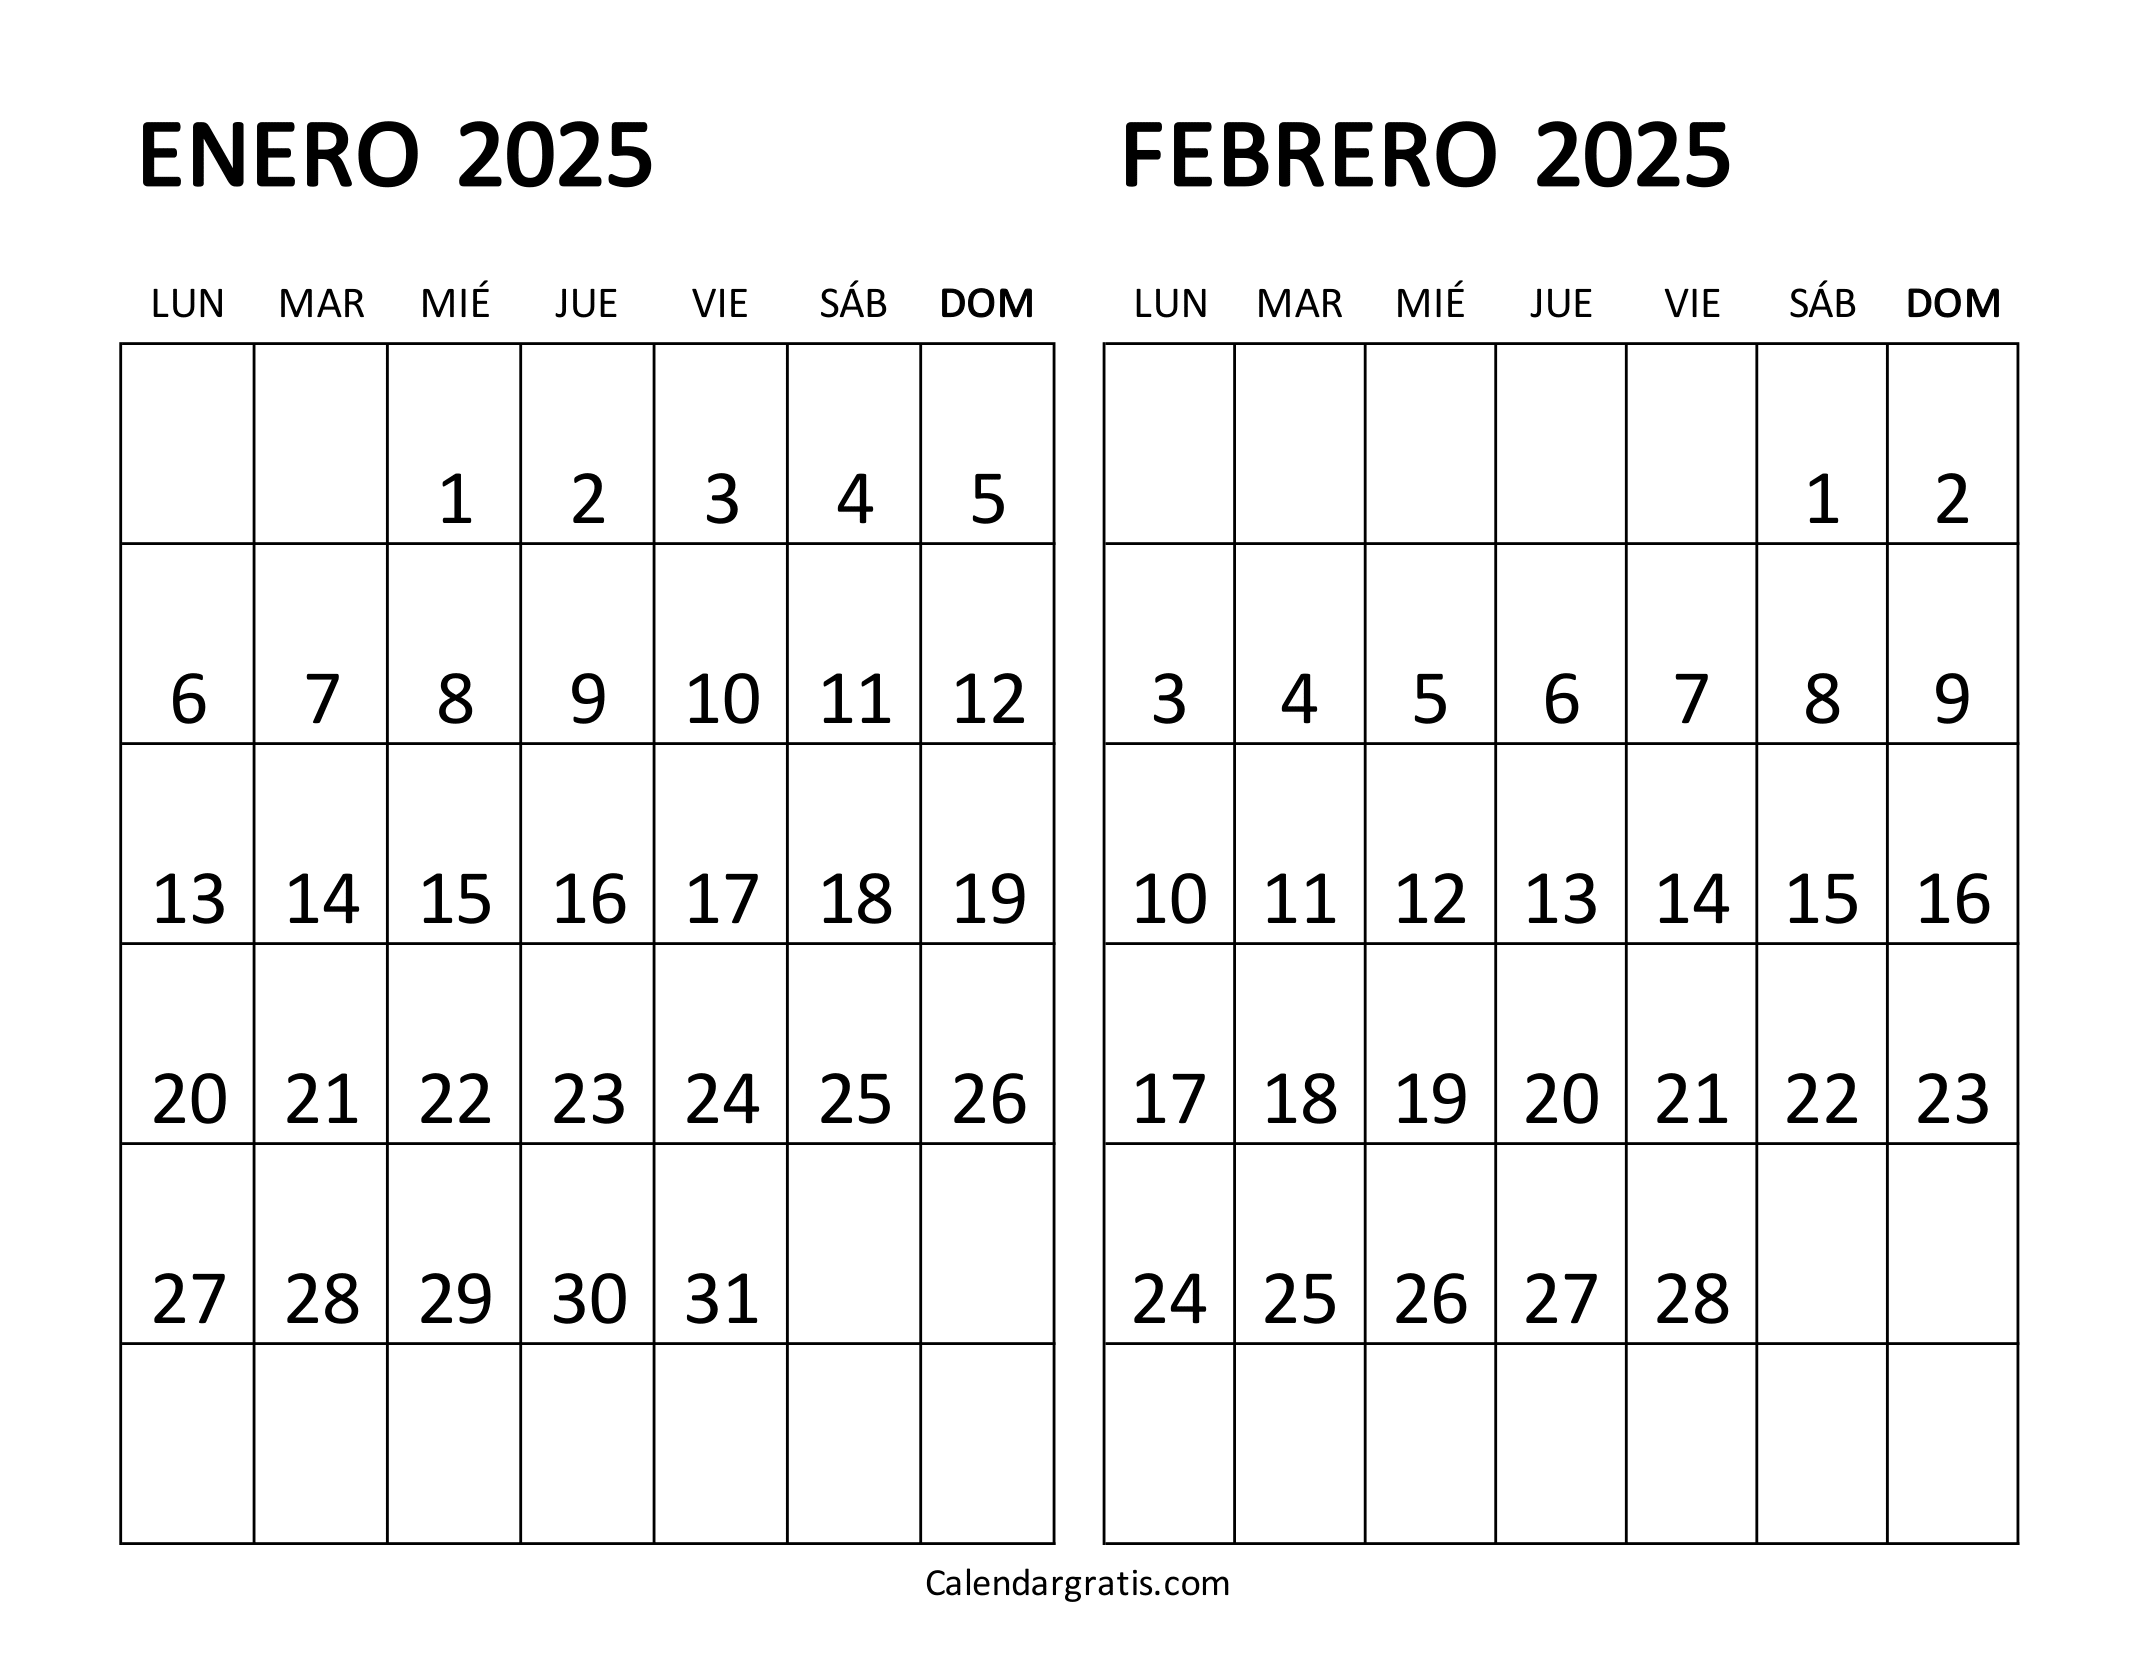 Calendario enero y febrero 2025 para imprimir